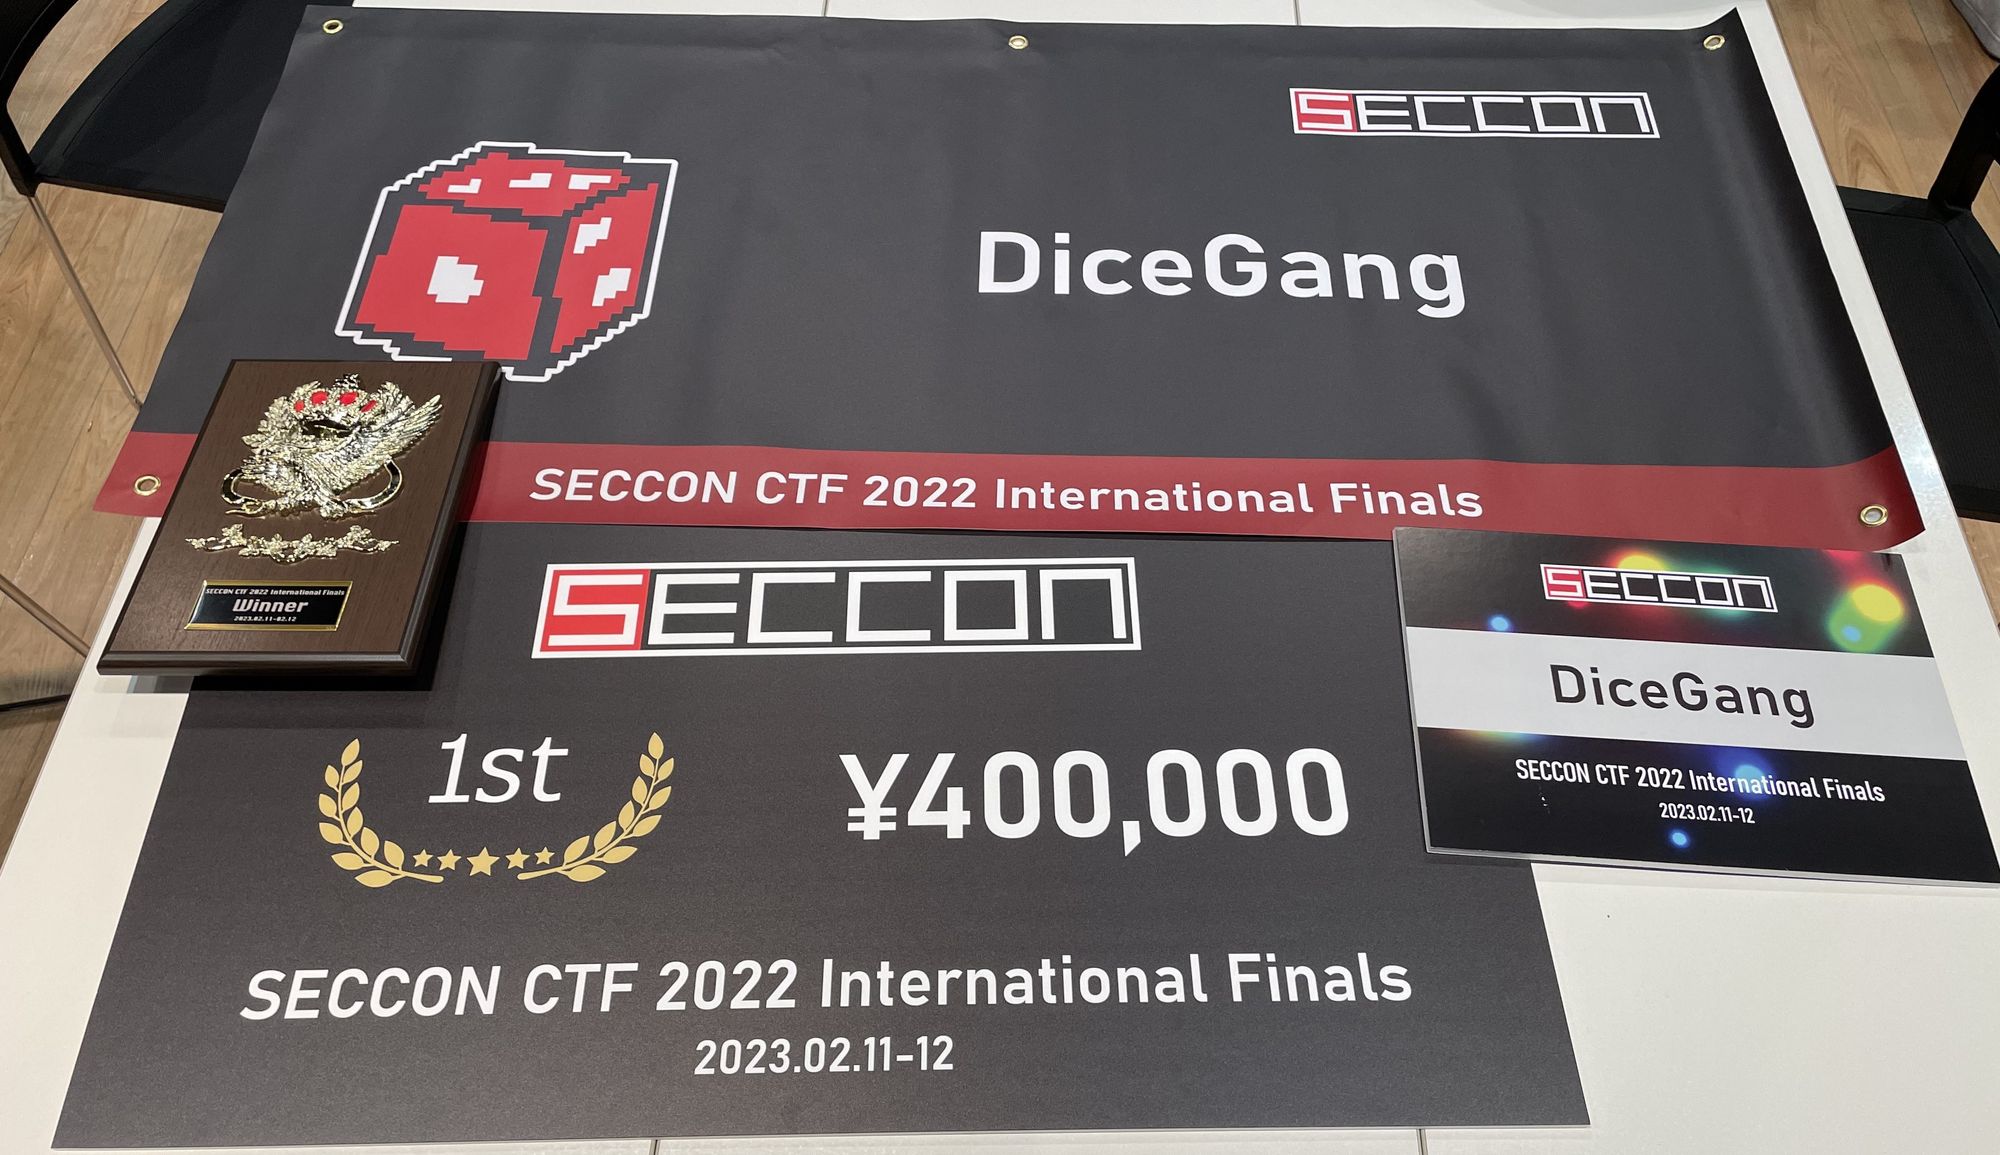 SECCON CTF 2022 Finals